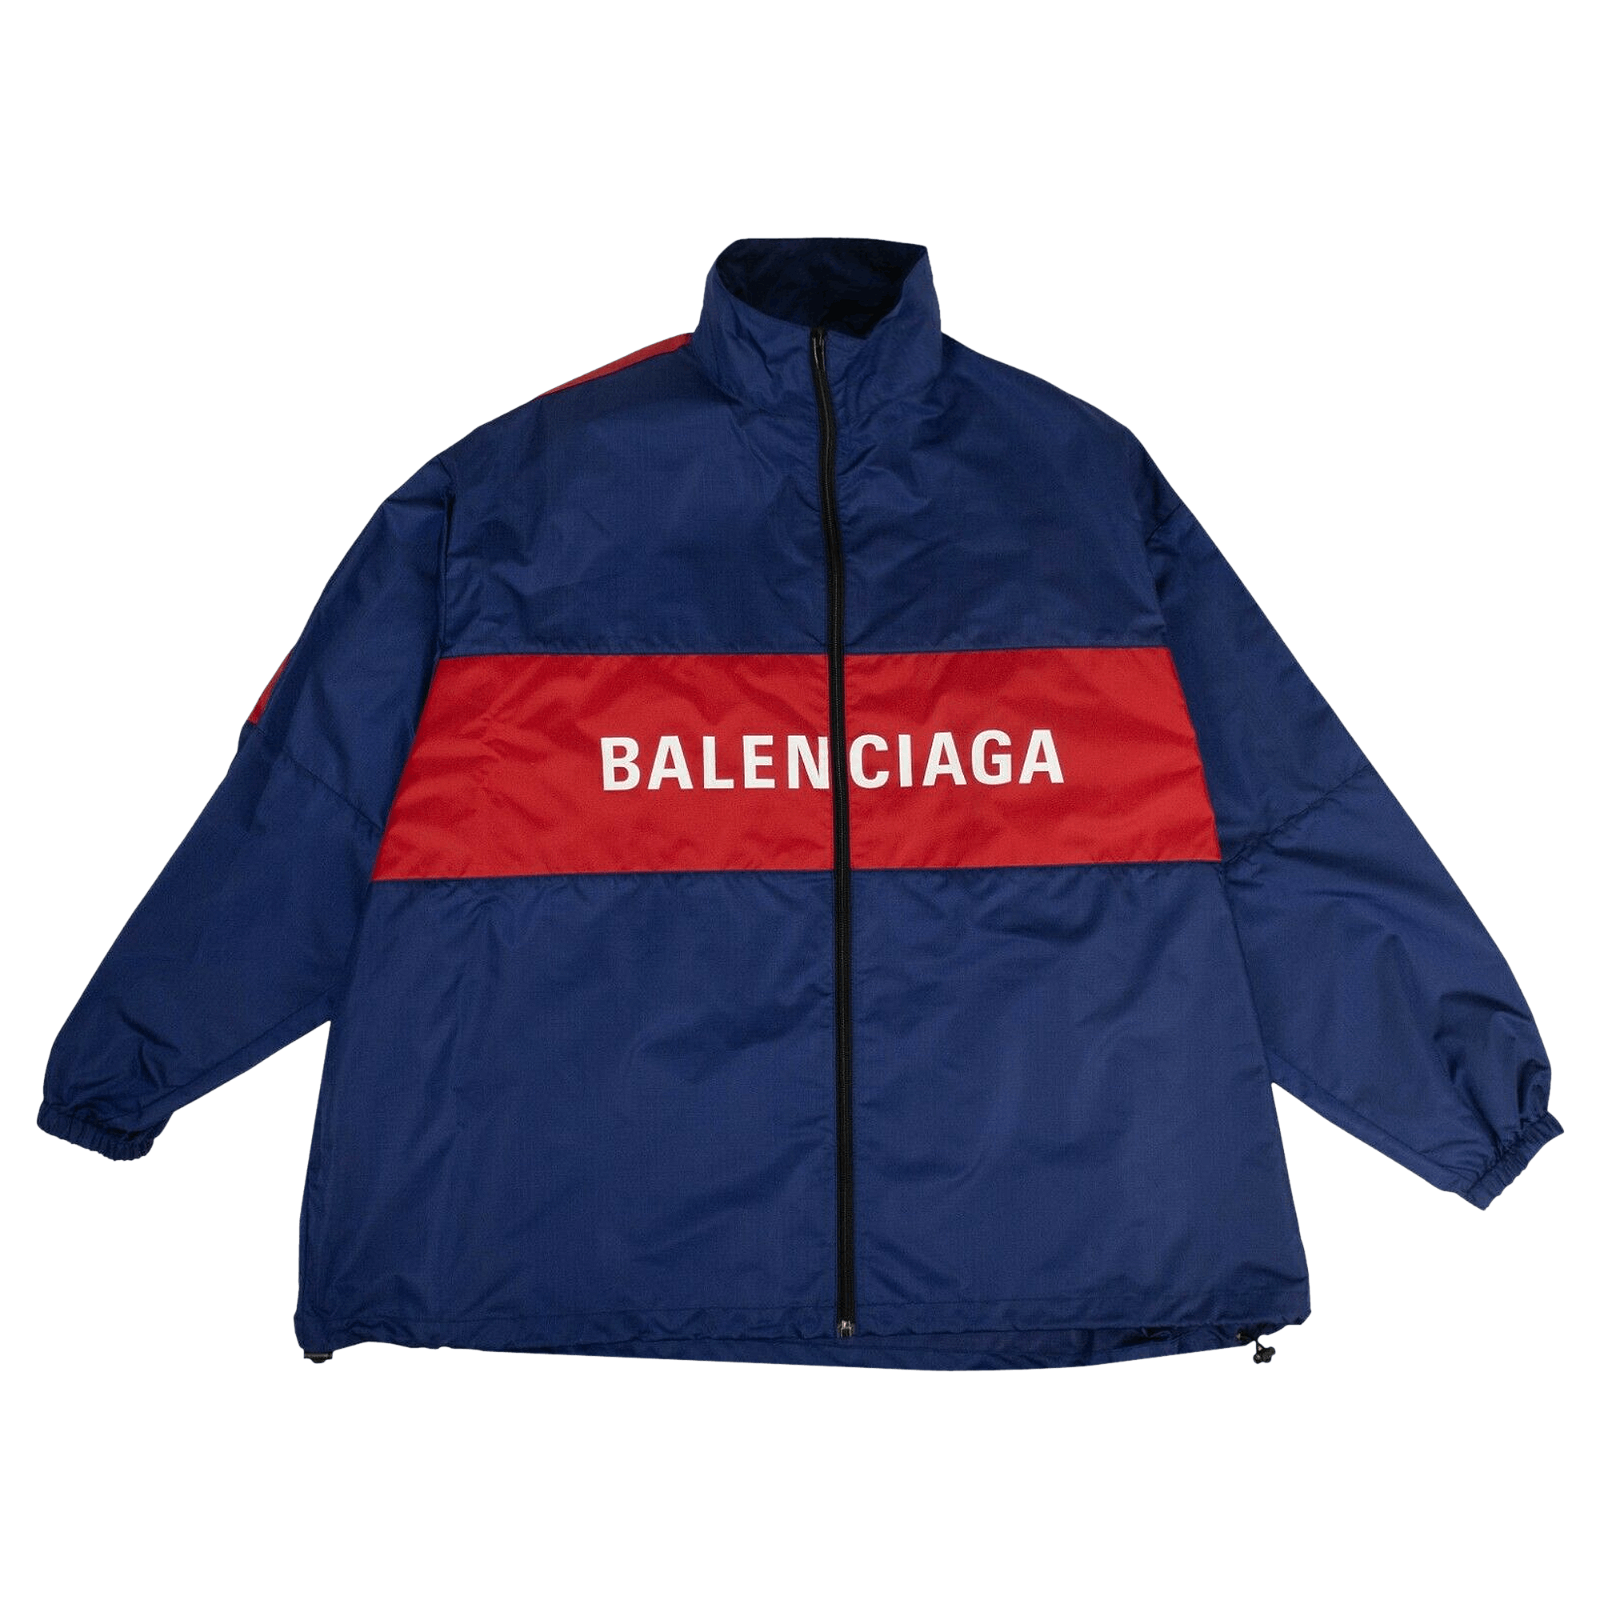 Tổng hợp Balenciaga Jacket giá rẻ bán chạy tháng 62023  BeeCost